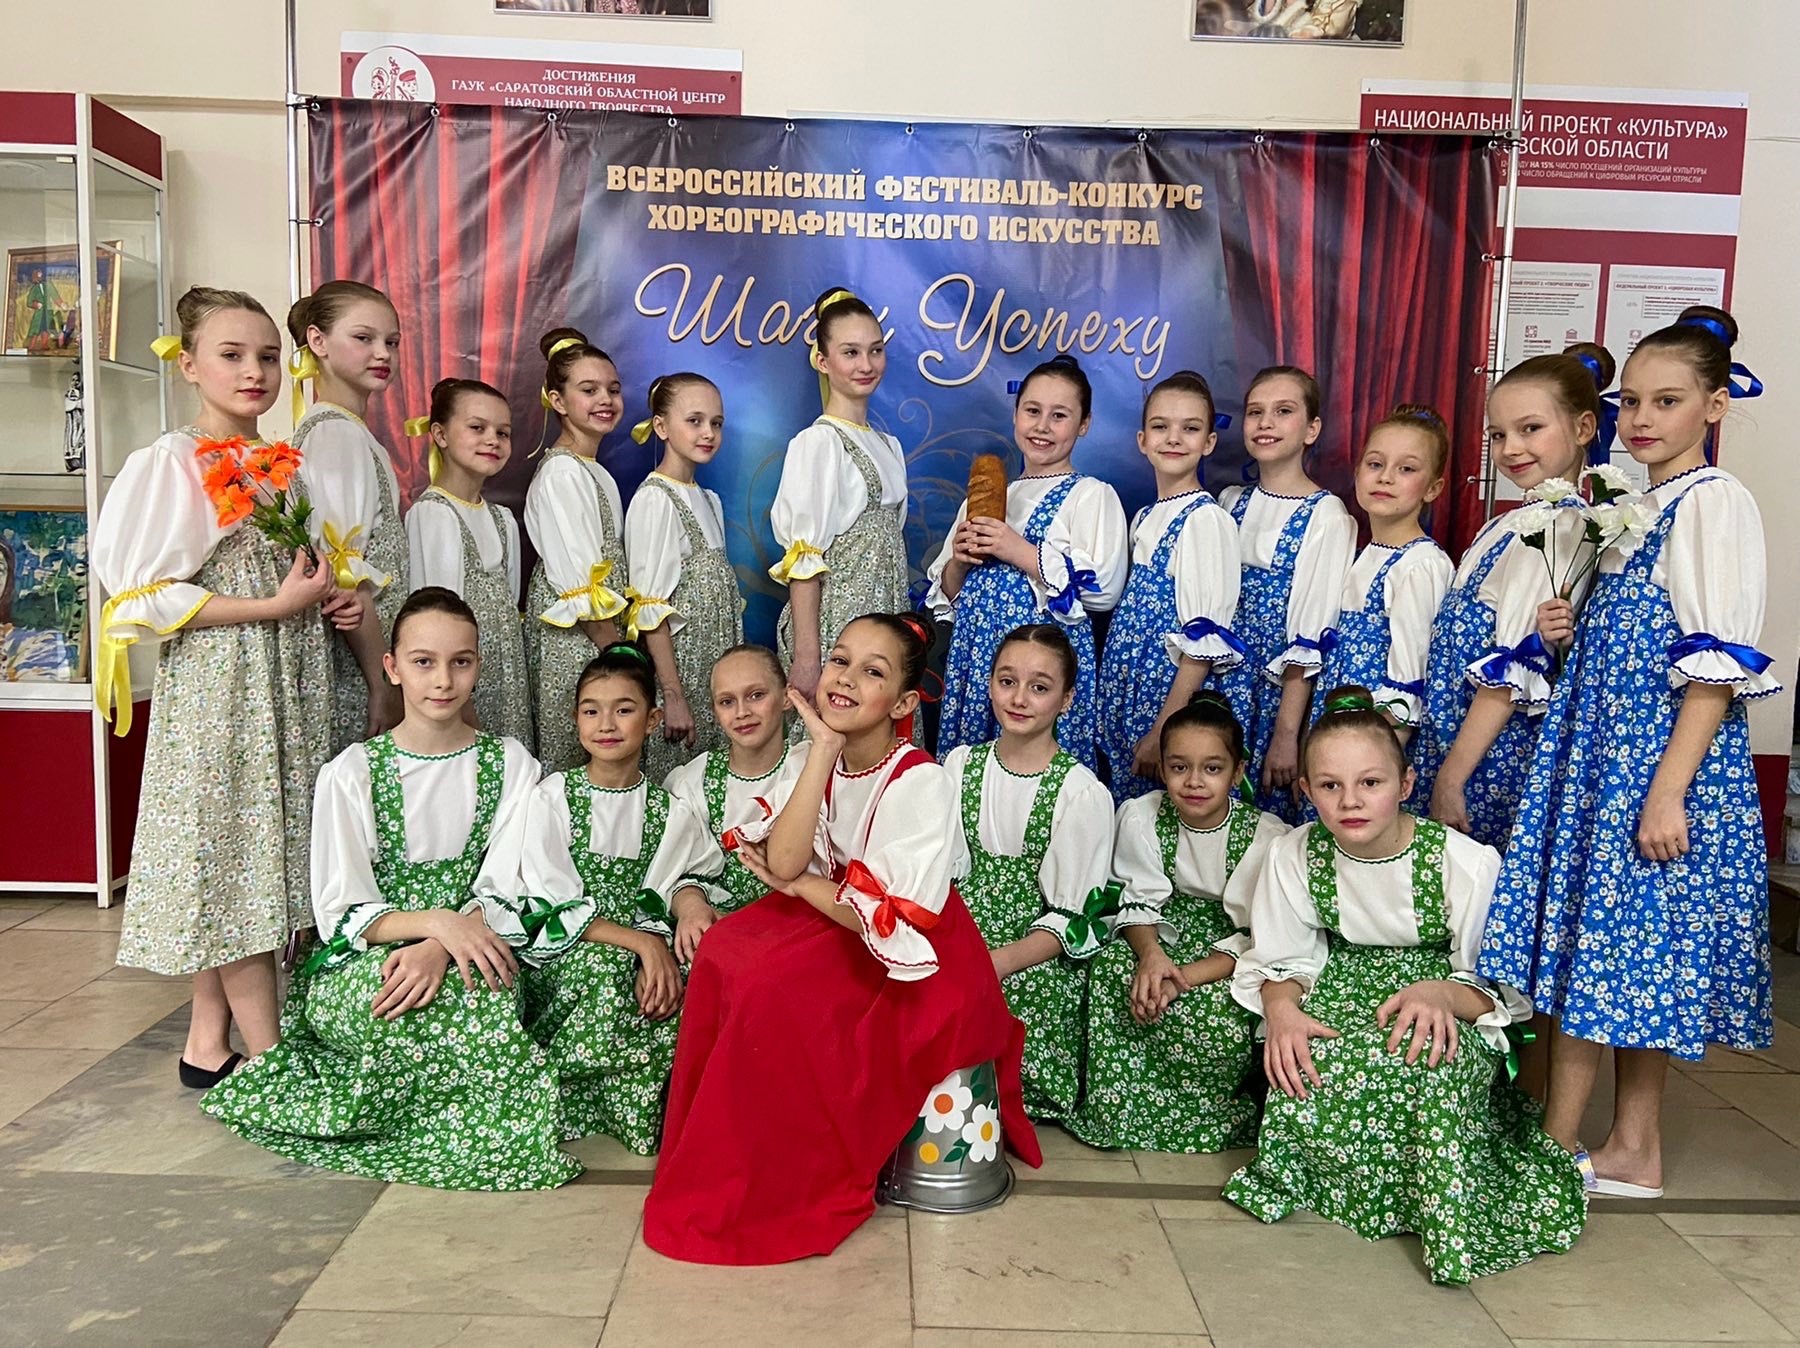 Поздравляем ансамбль эстрадного танца «Непоседы» с победой на IV Всероссийском фестивале-конкурсе хореографического искусства «Шаг к успеху»